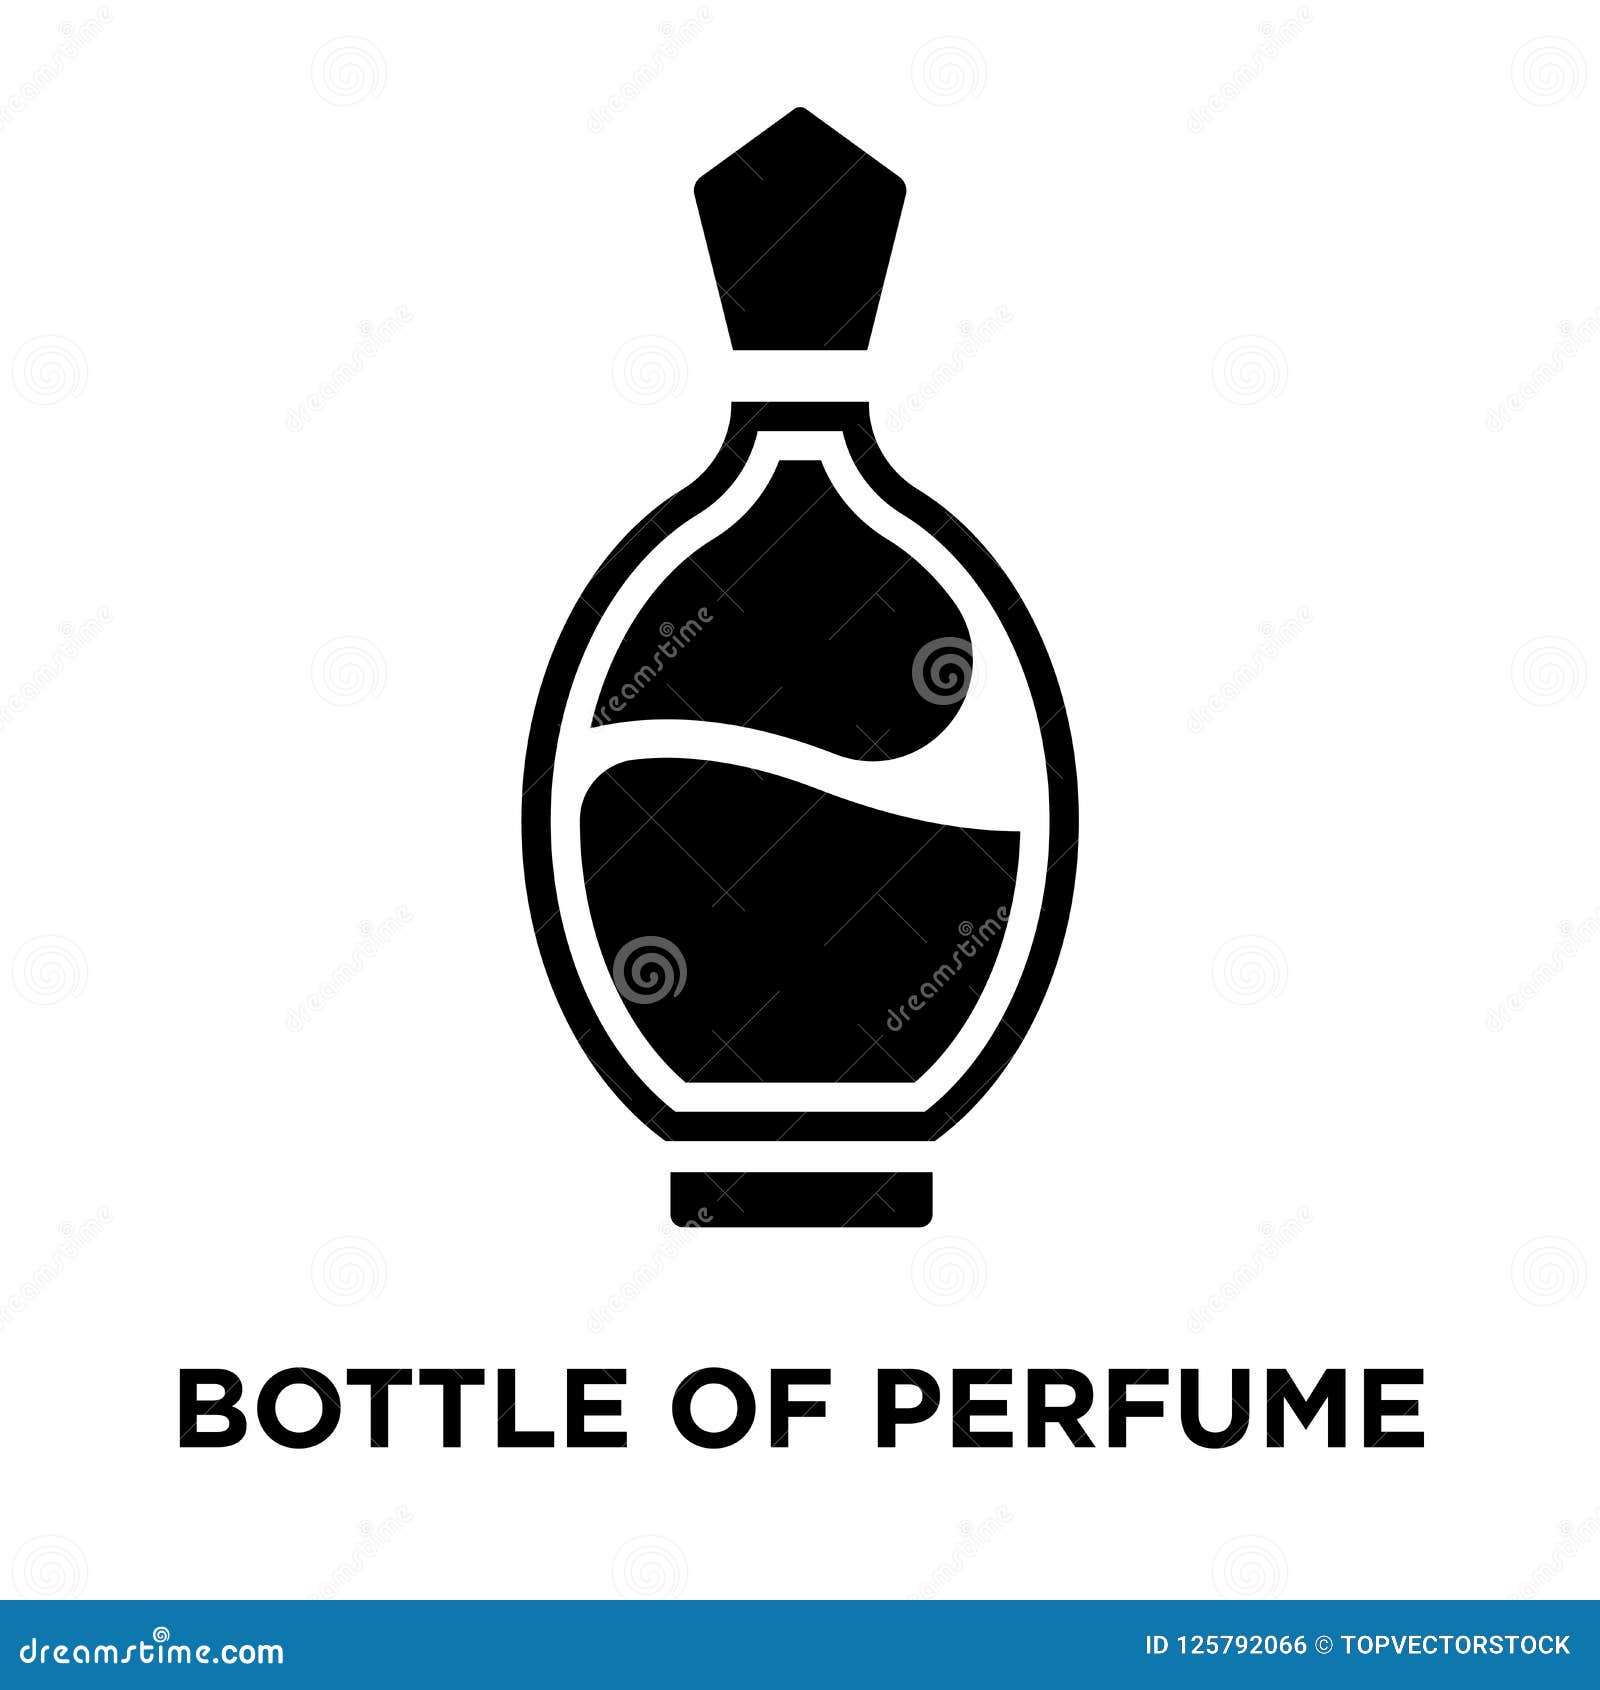 bottle of perfume iconÃÂ    on white background, lo